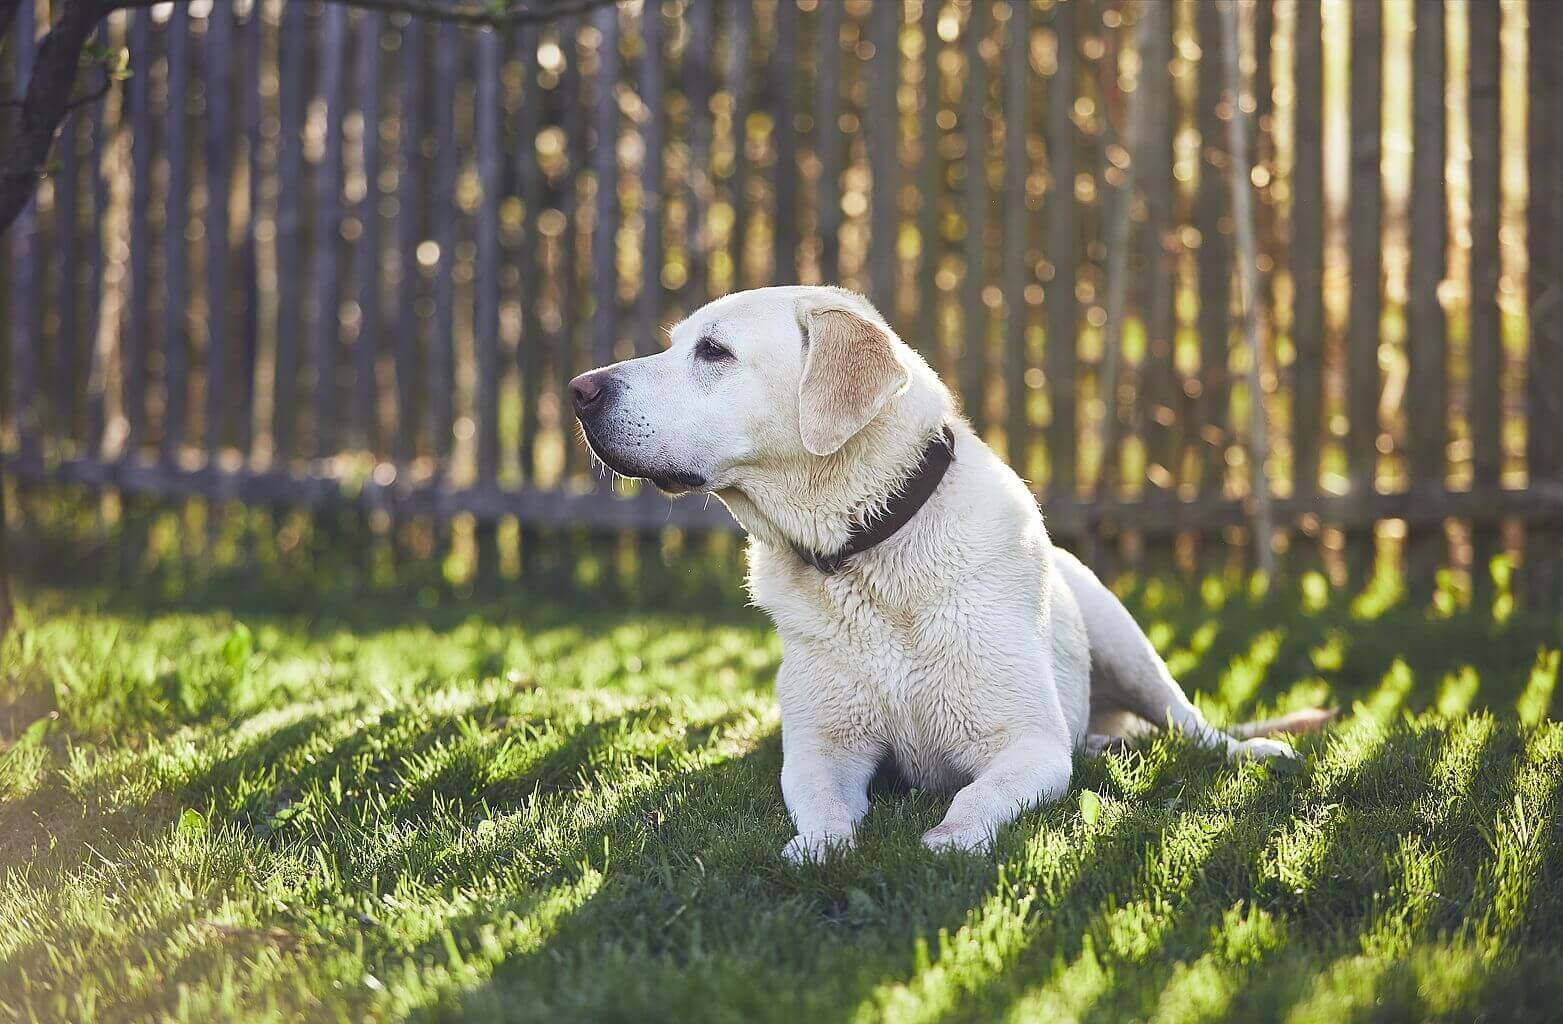 Kojec dla psa, czyli pies na ogrodzonej posesji